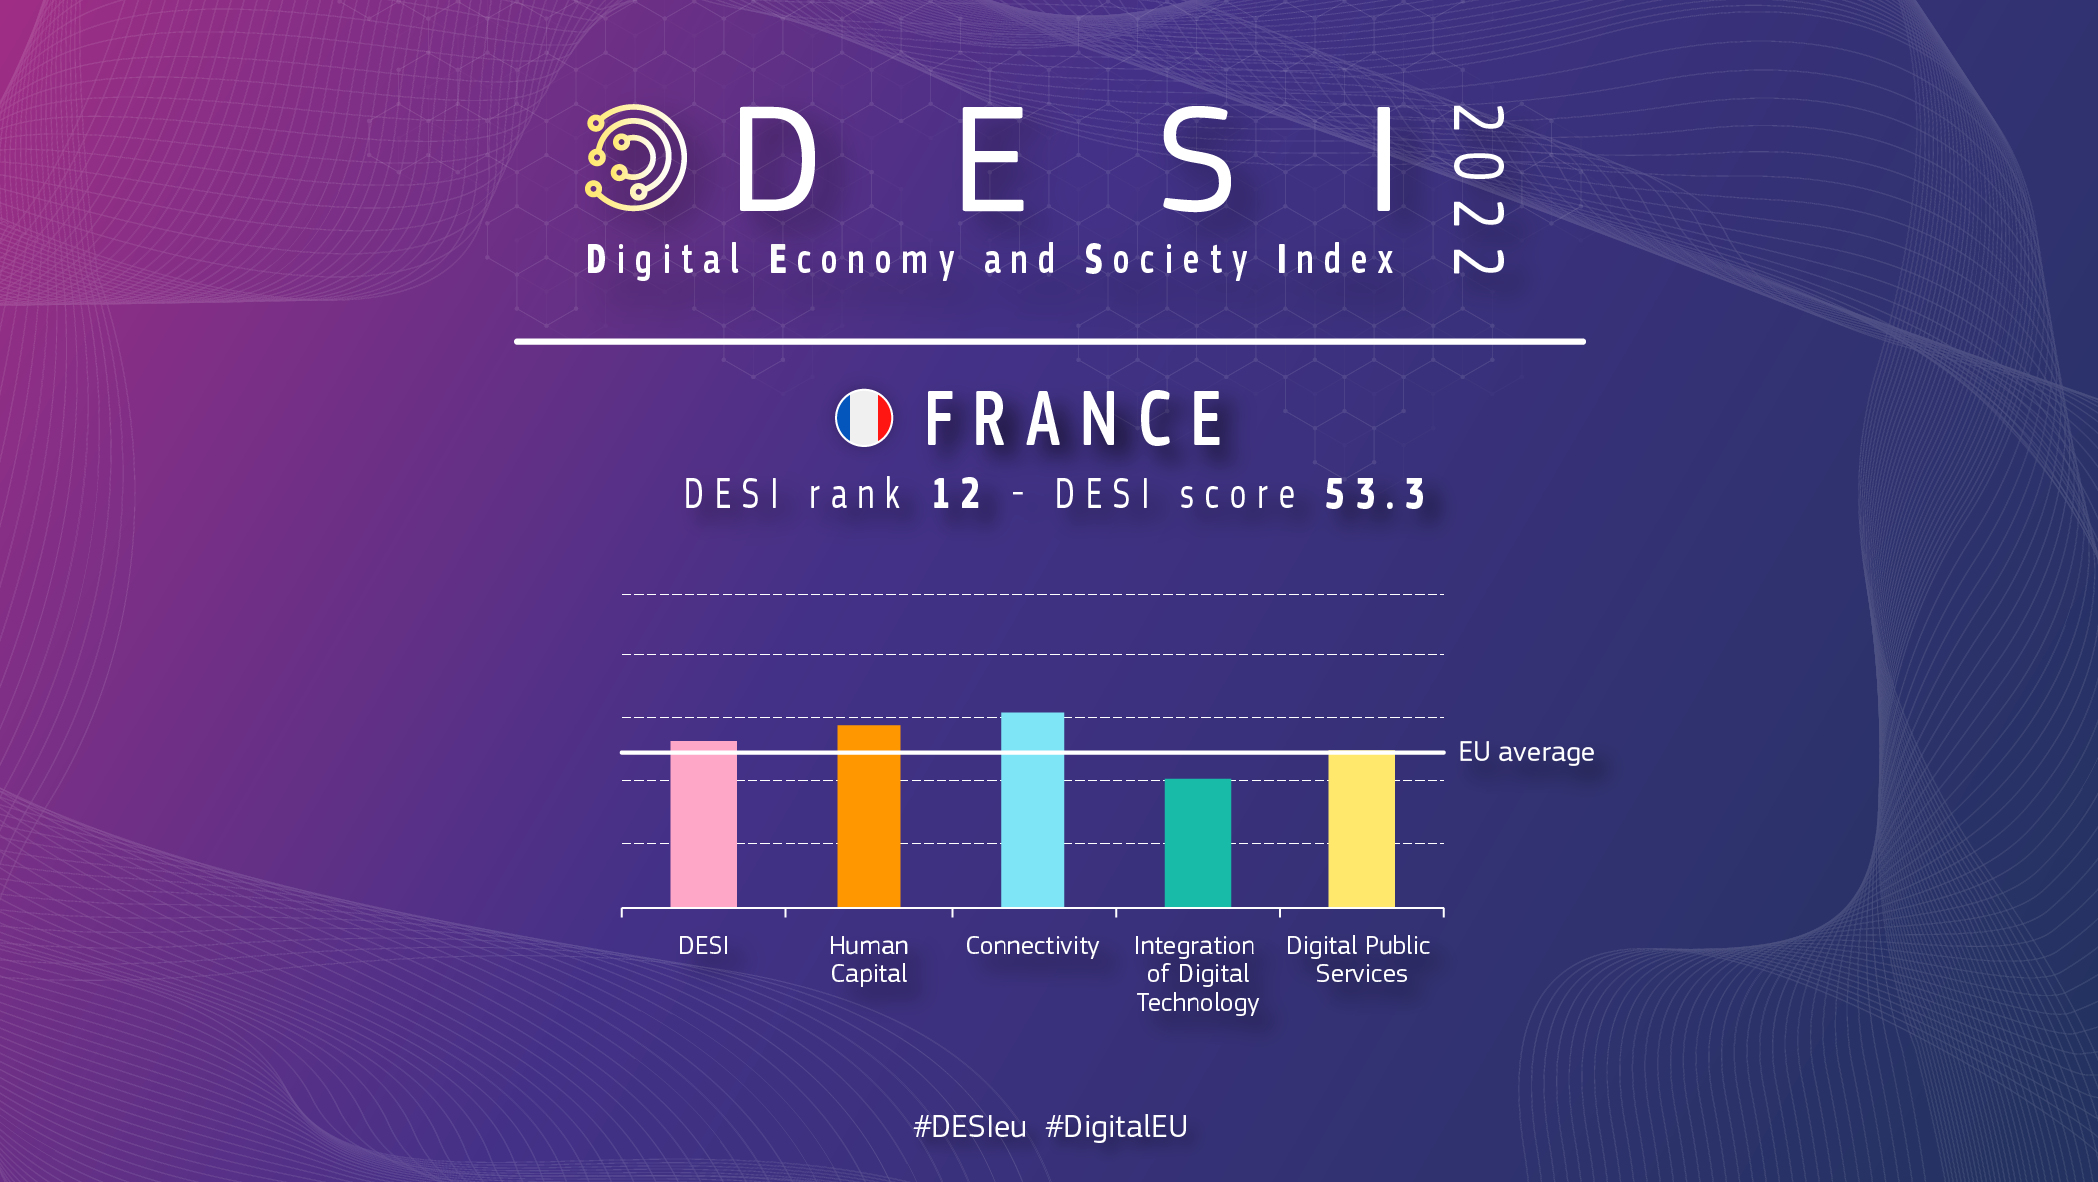 Aperçu graphique de la France en DESI montrant un classement de 12 et un score de 53,3